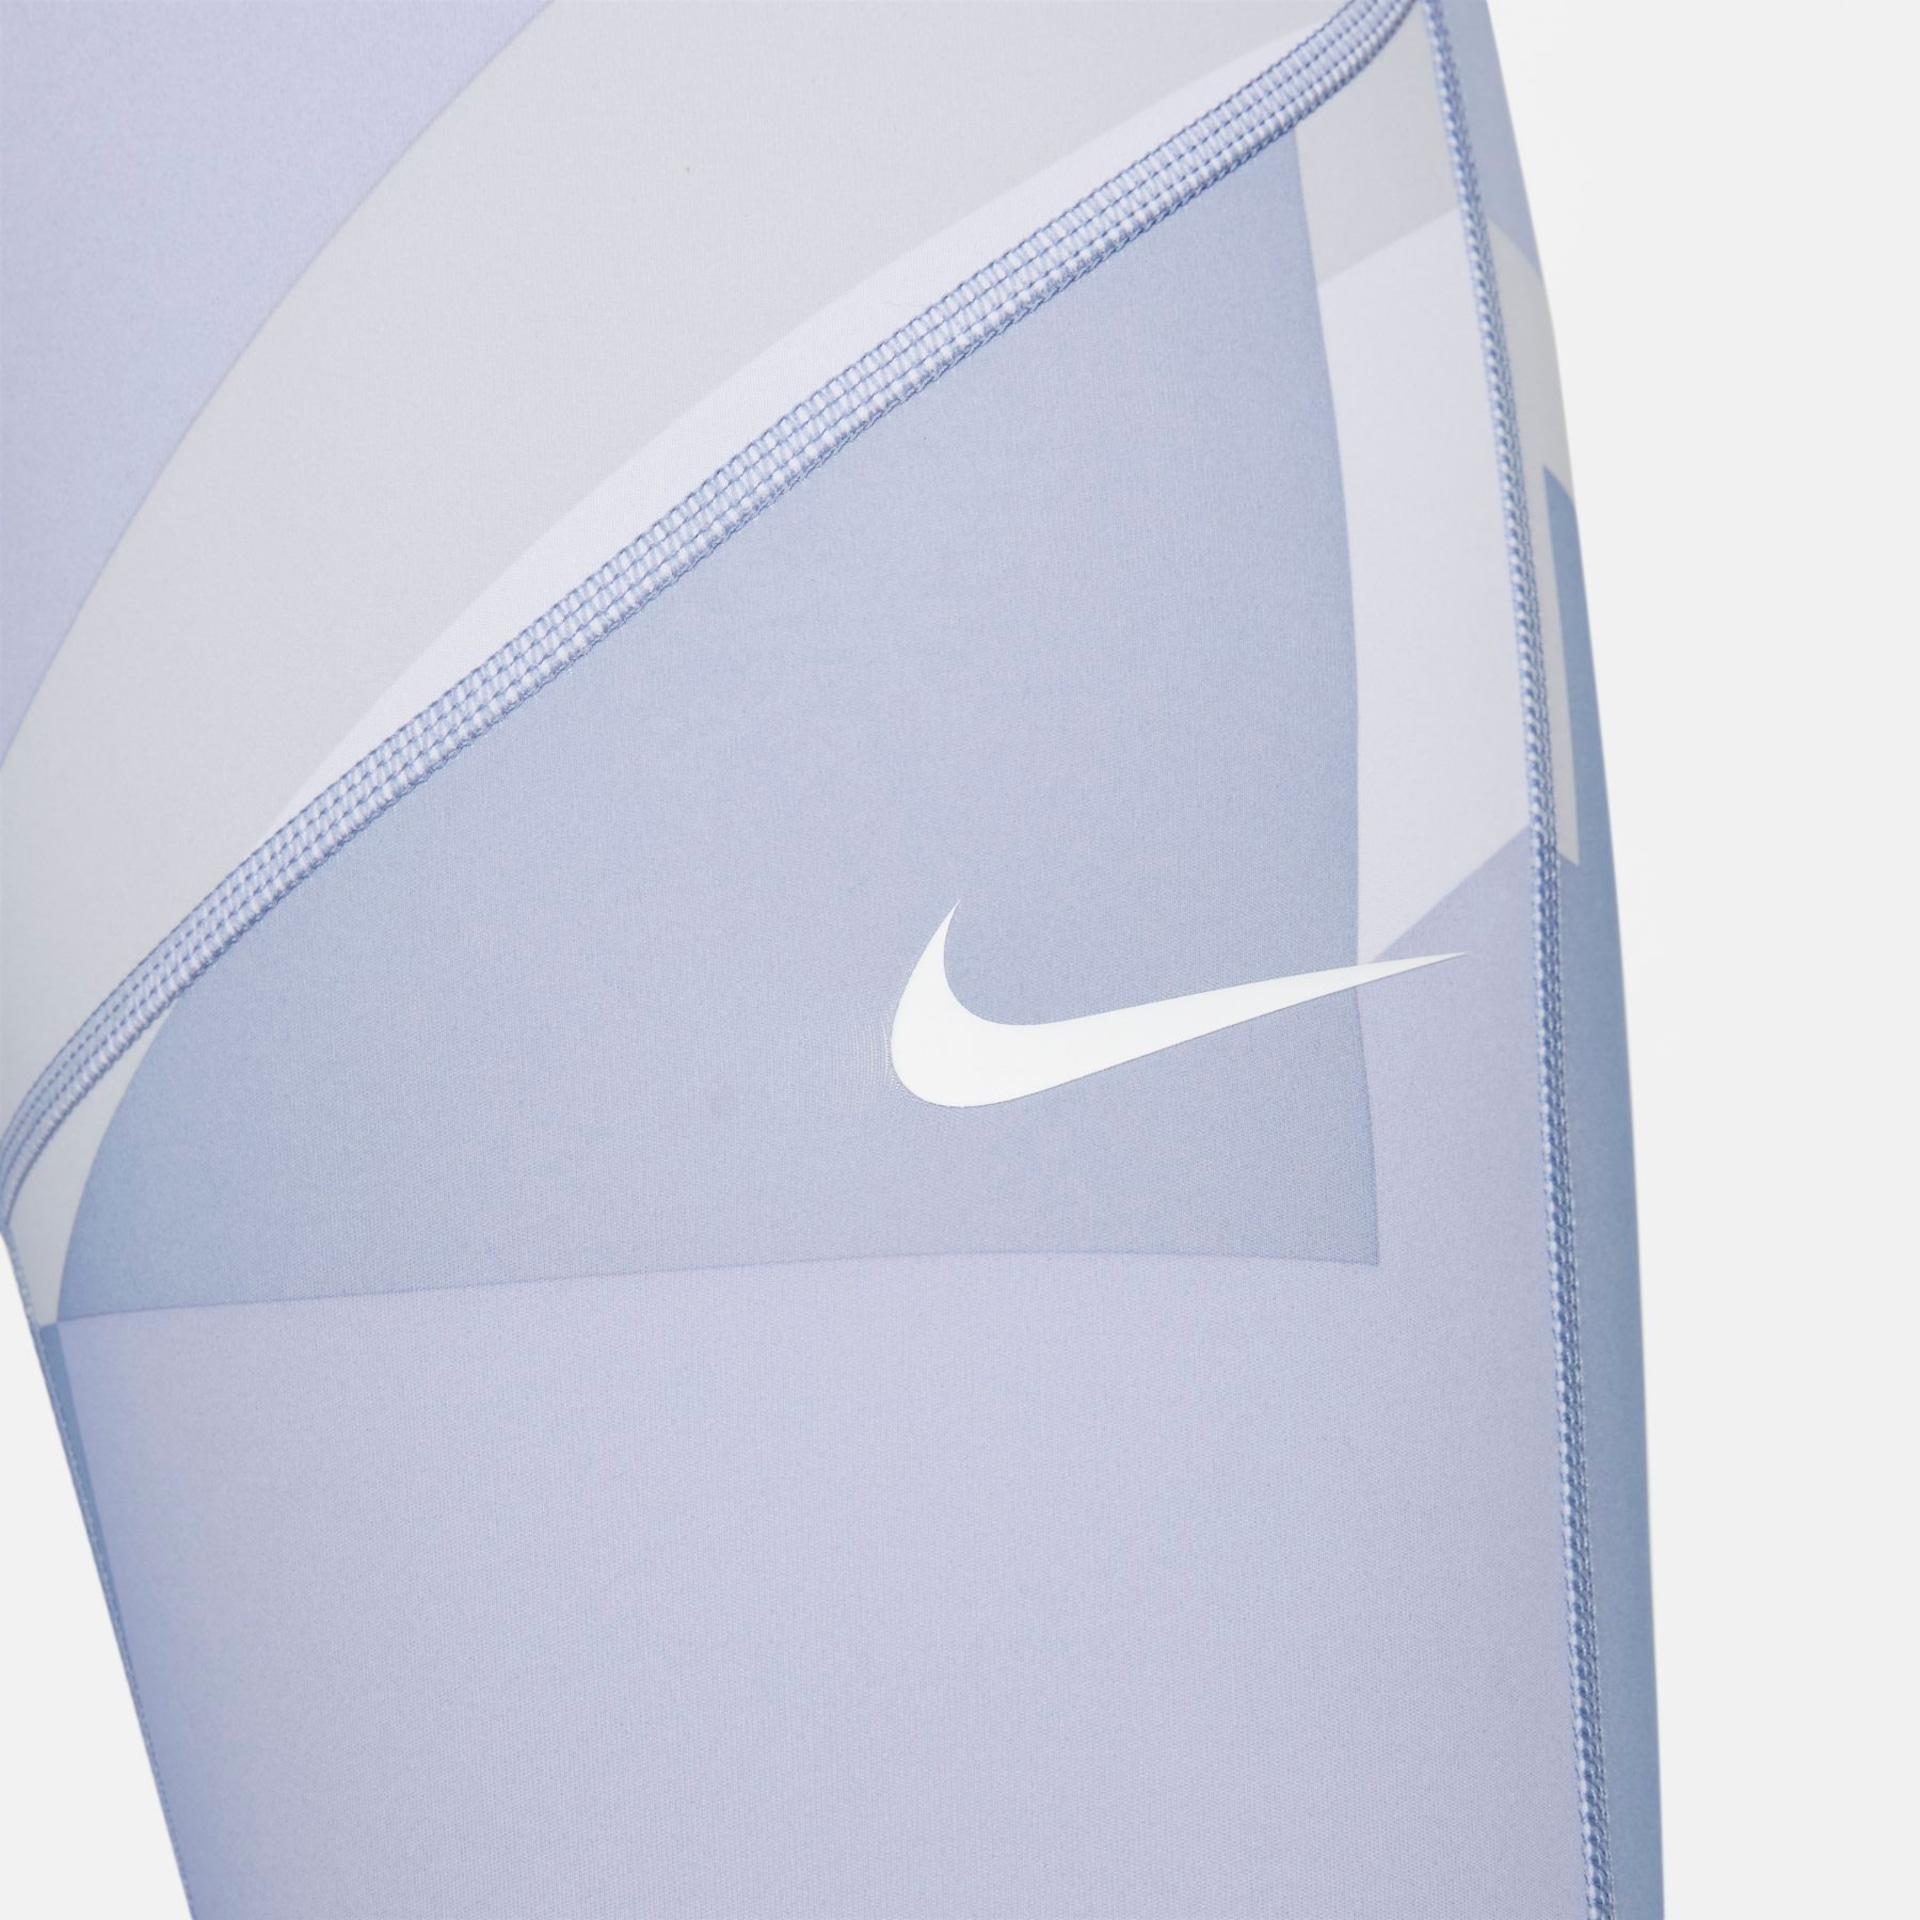 Legging Nike Pro Dri-FIT VNVA Feminina - Foto 4